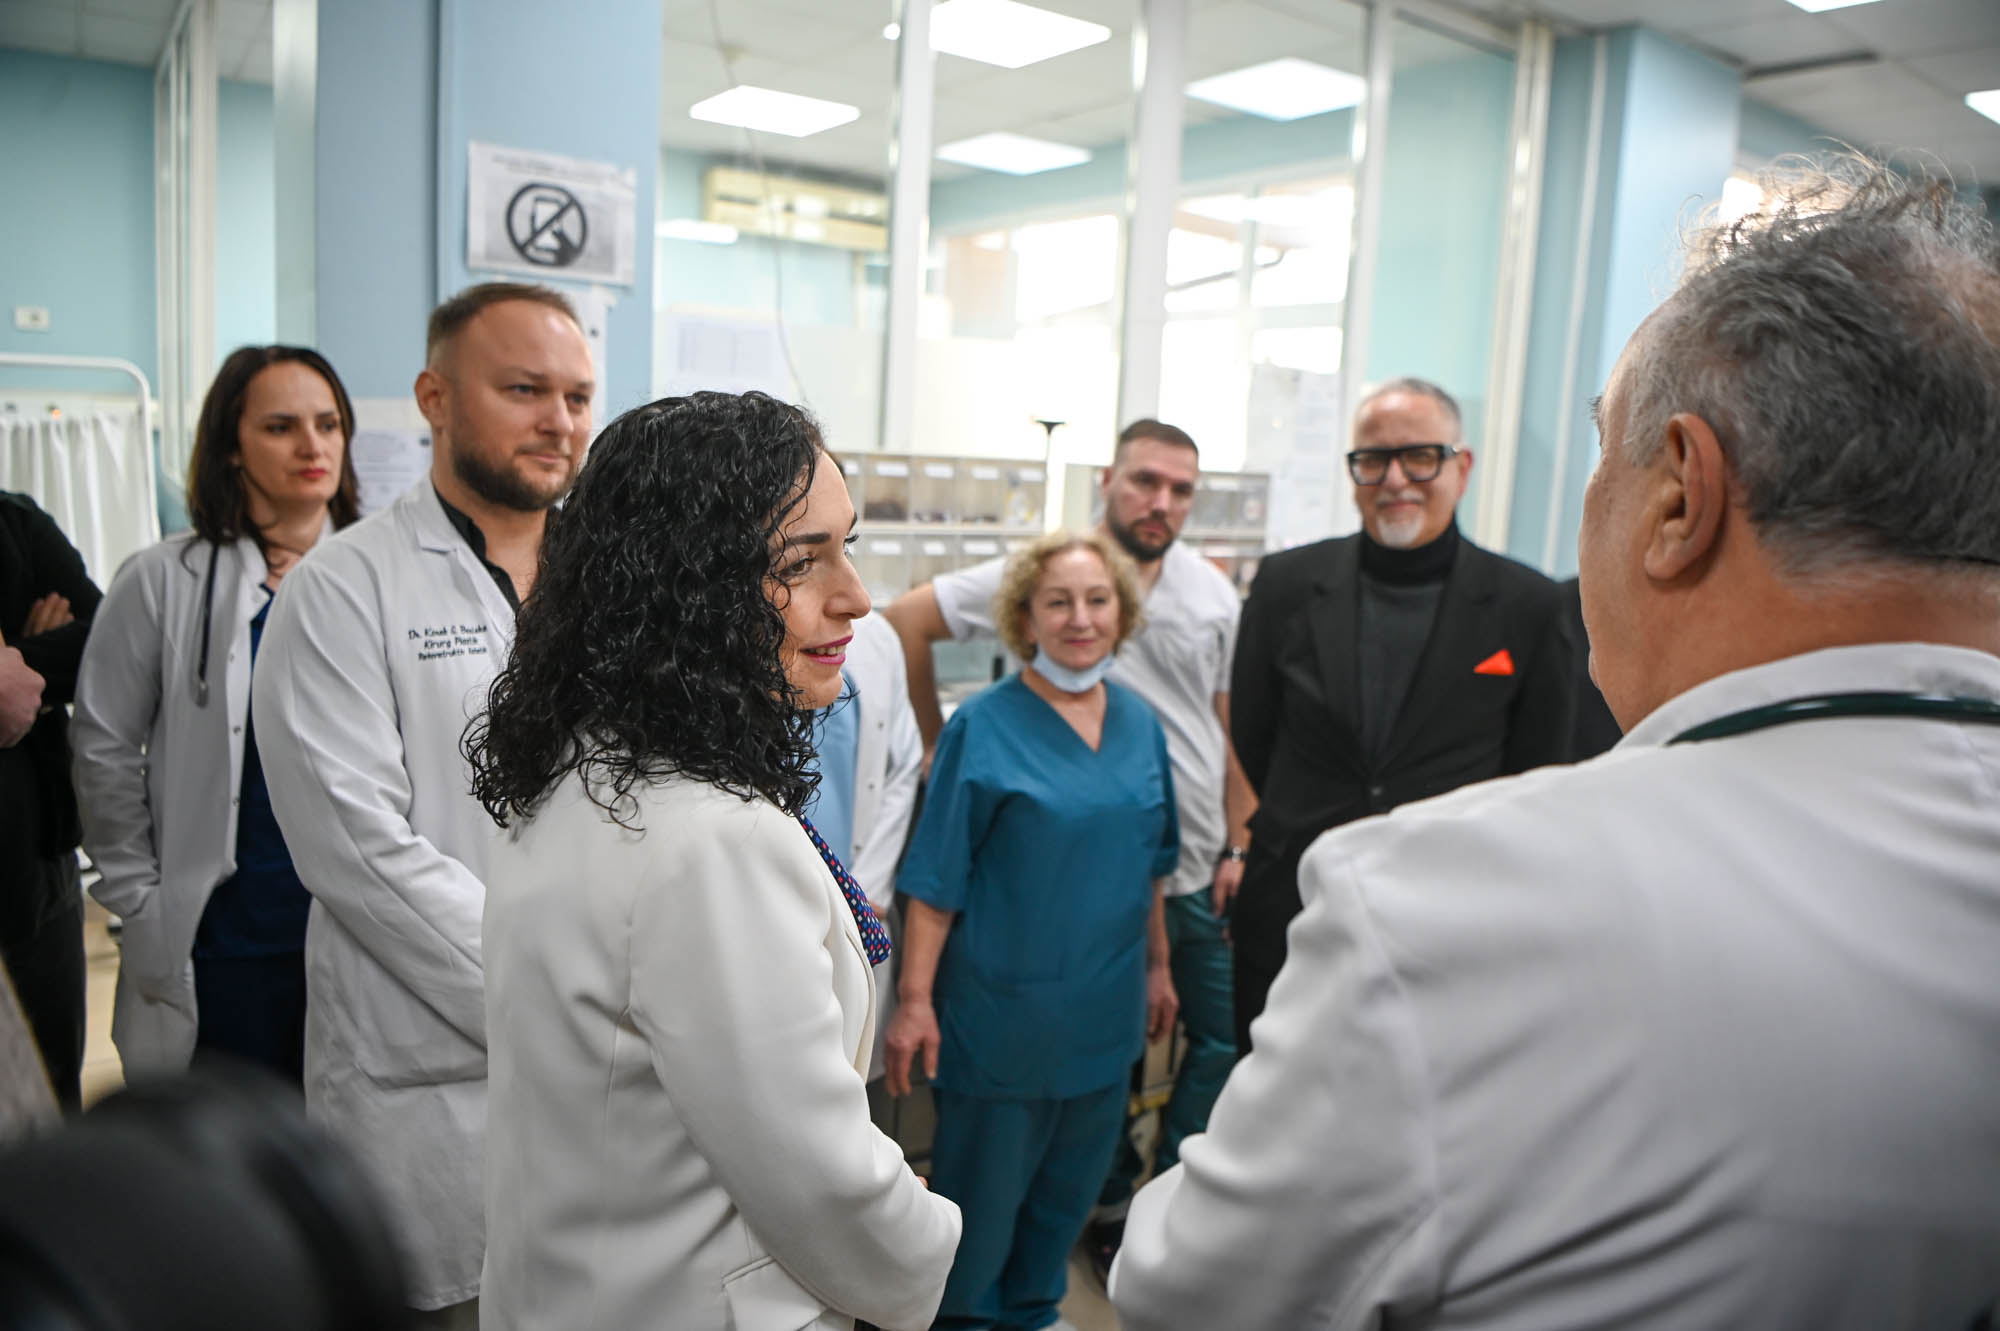 Në prag të vitit të ri, presidentja Osmani viziton Qendrën Klinike Universitare të Kosovës